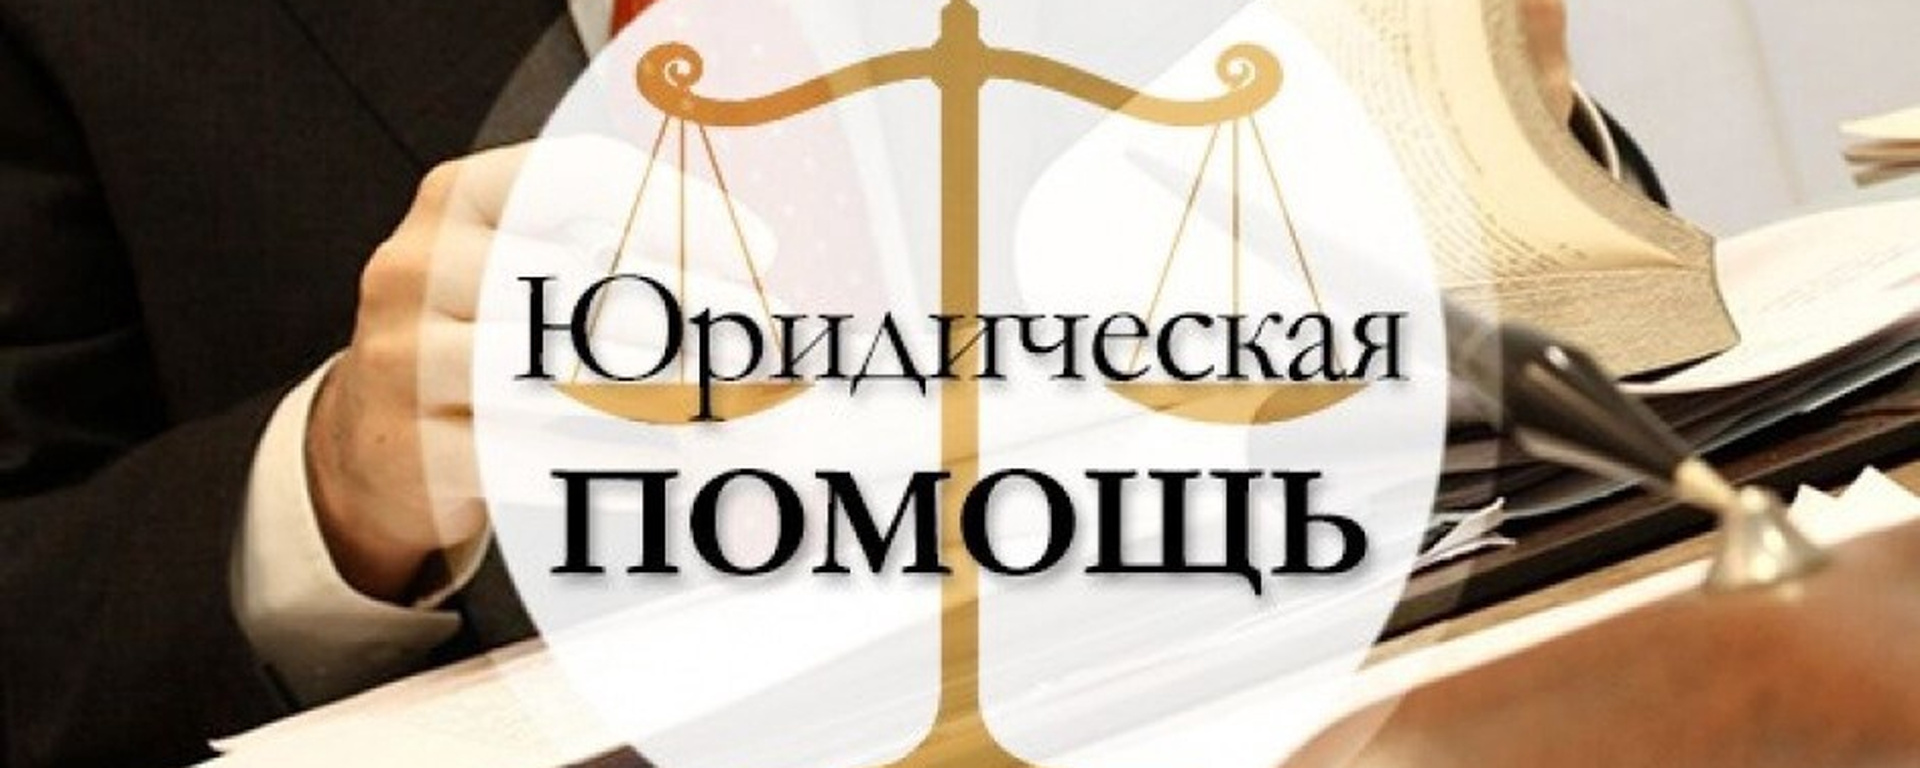 Юридическая помощь в Кировском районе